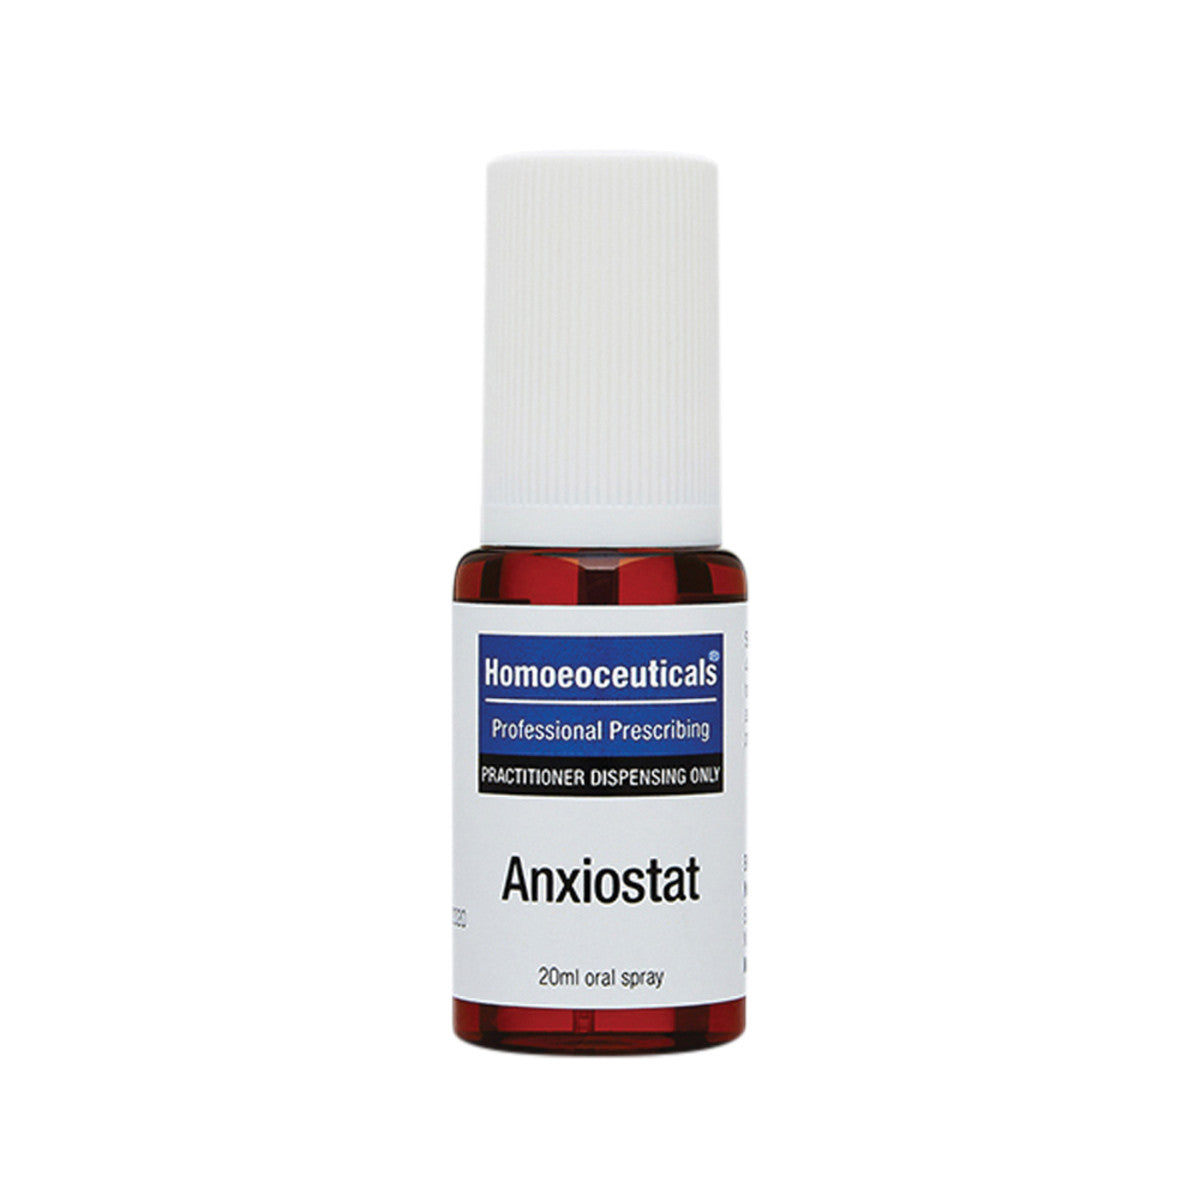 Anxiostat 20ml Spray